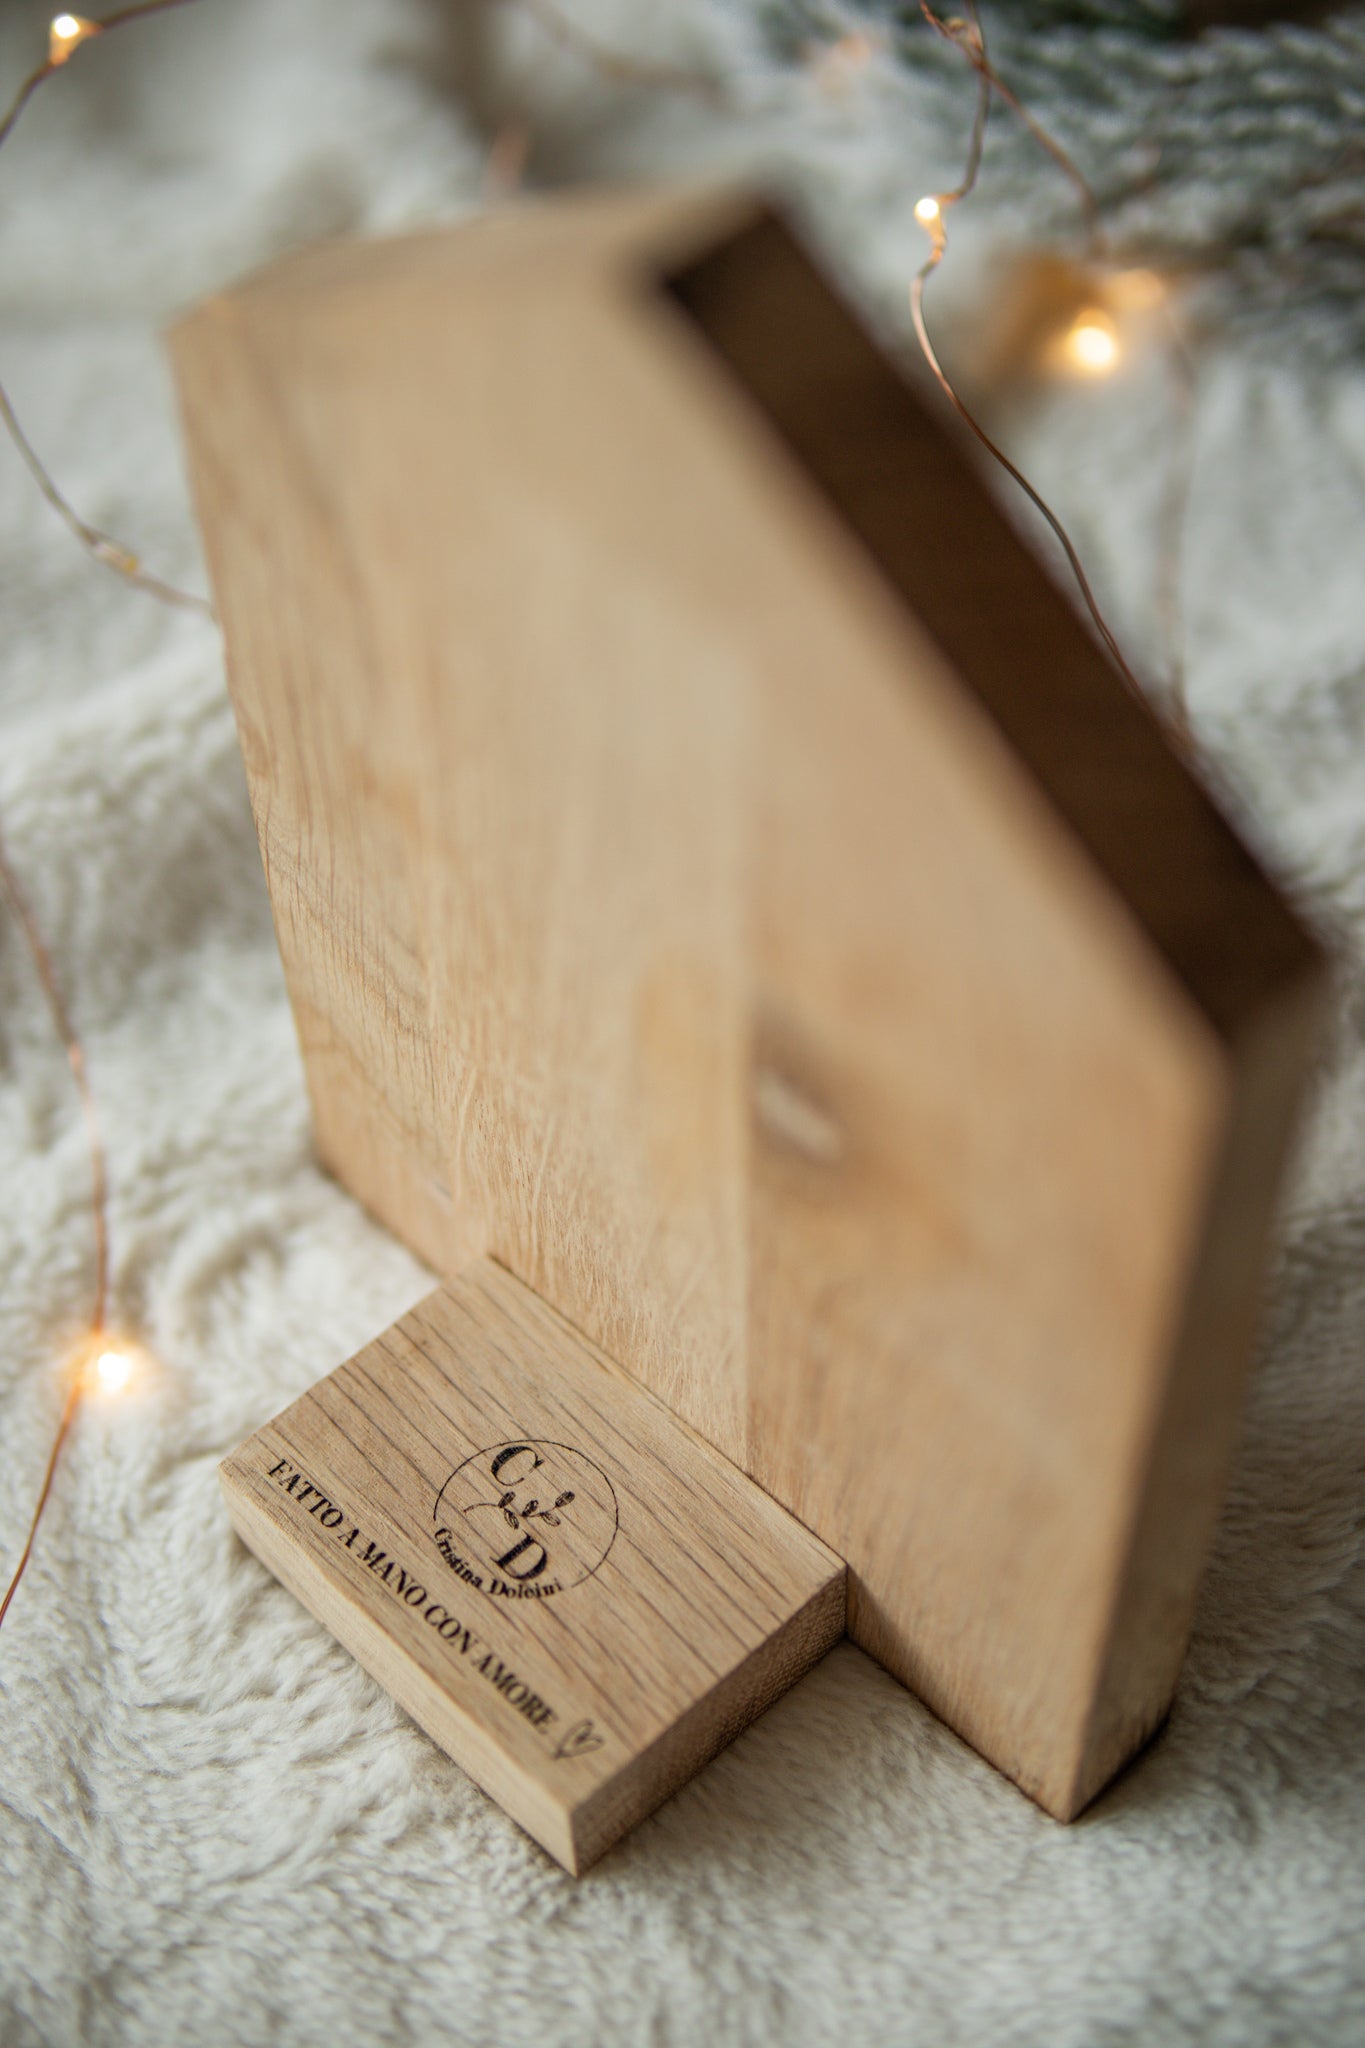 Contagiorni Natale casetta in legno